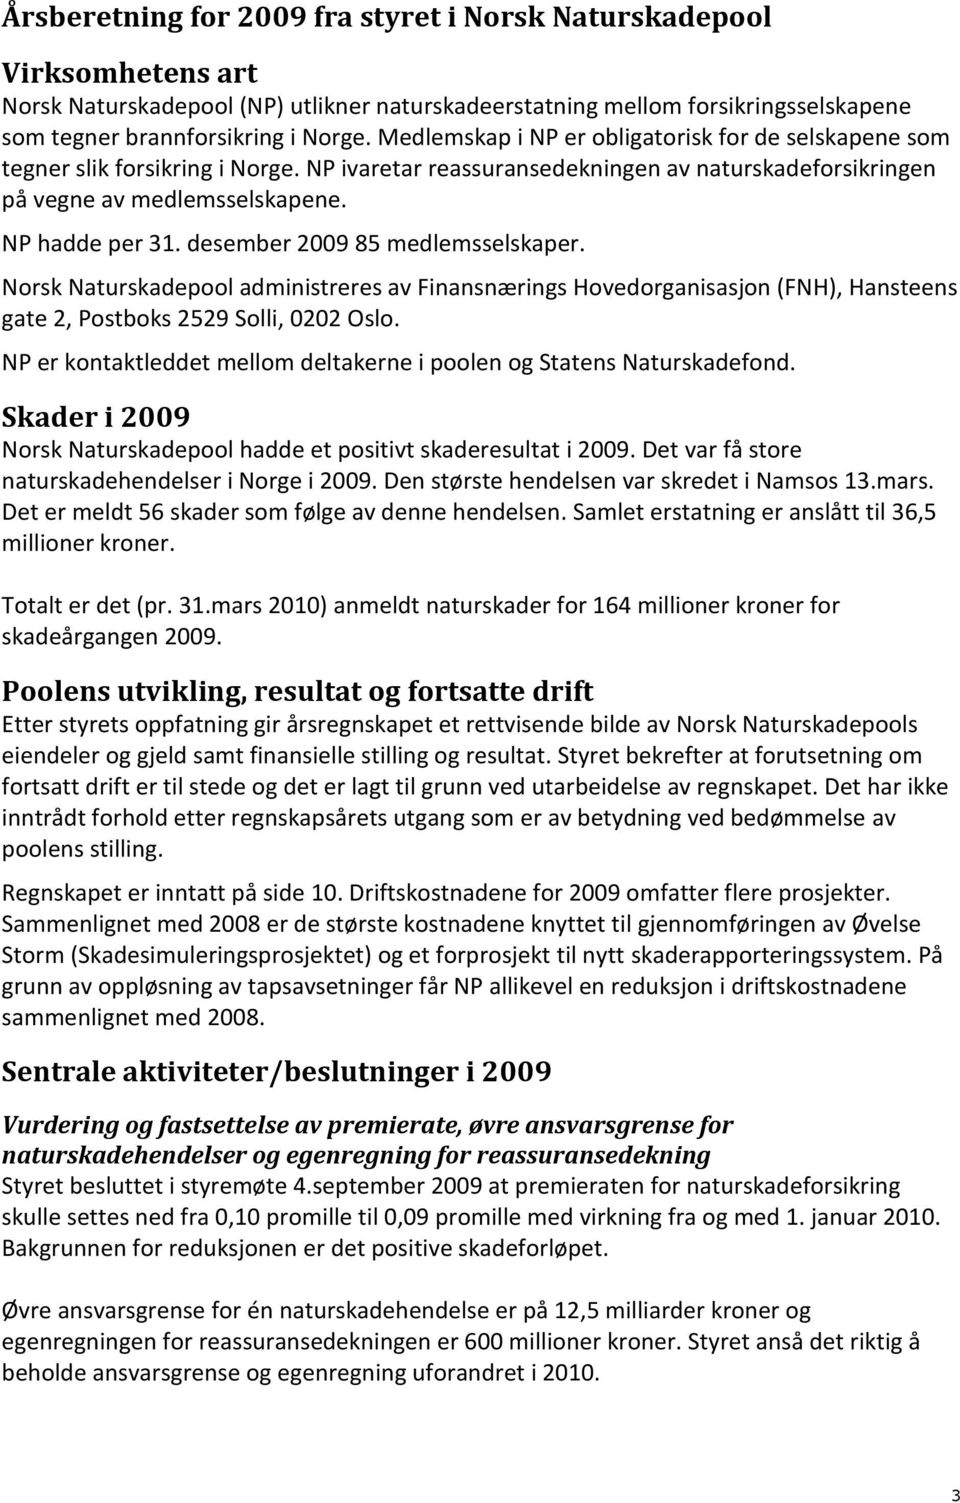 desember 2009 85 medlemsselskaper. Norsk Naturskadepool administreres av Finansnærings Hovedorganisasjon (FNH), Hansteens gate 2, Postboks 2529 Solli, 0202 Oslo.